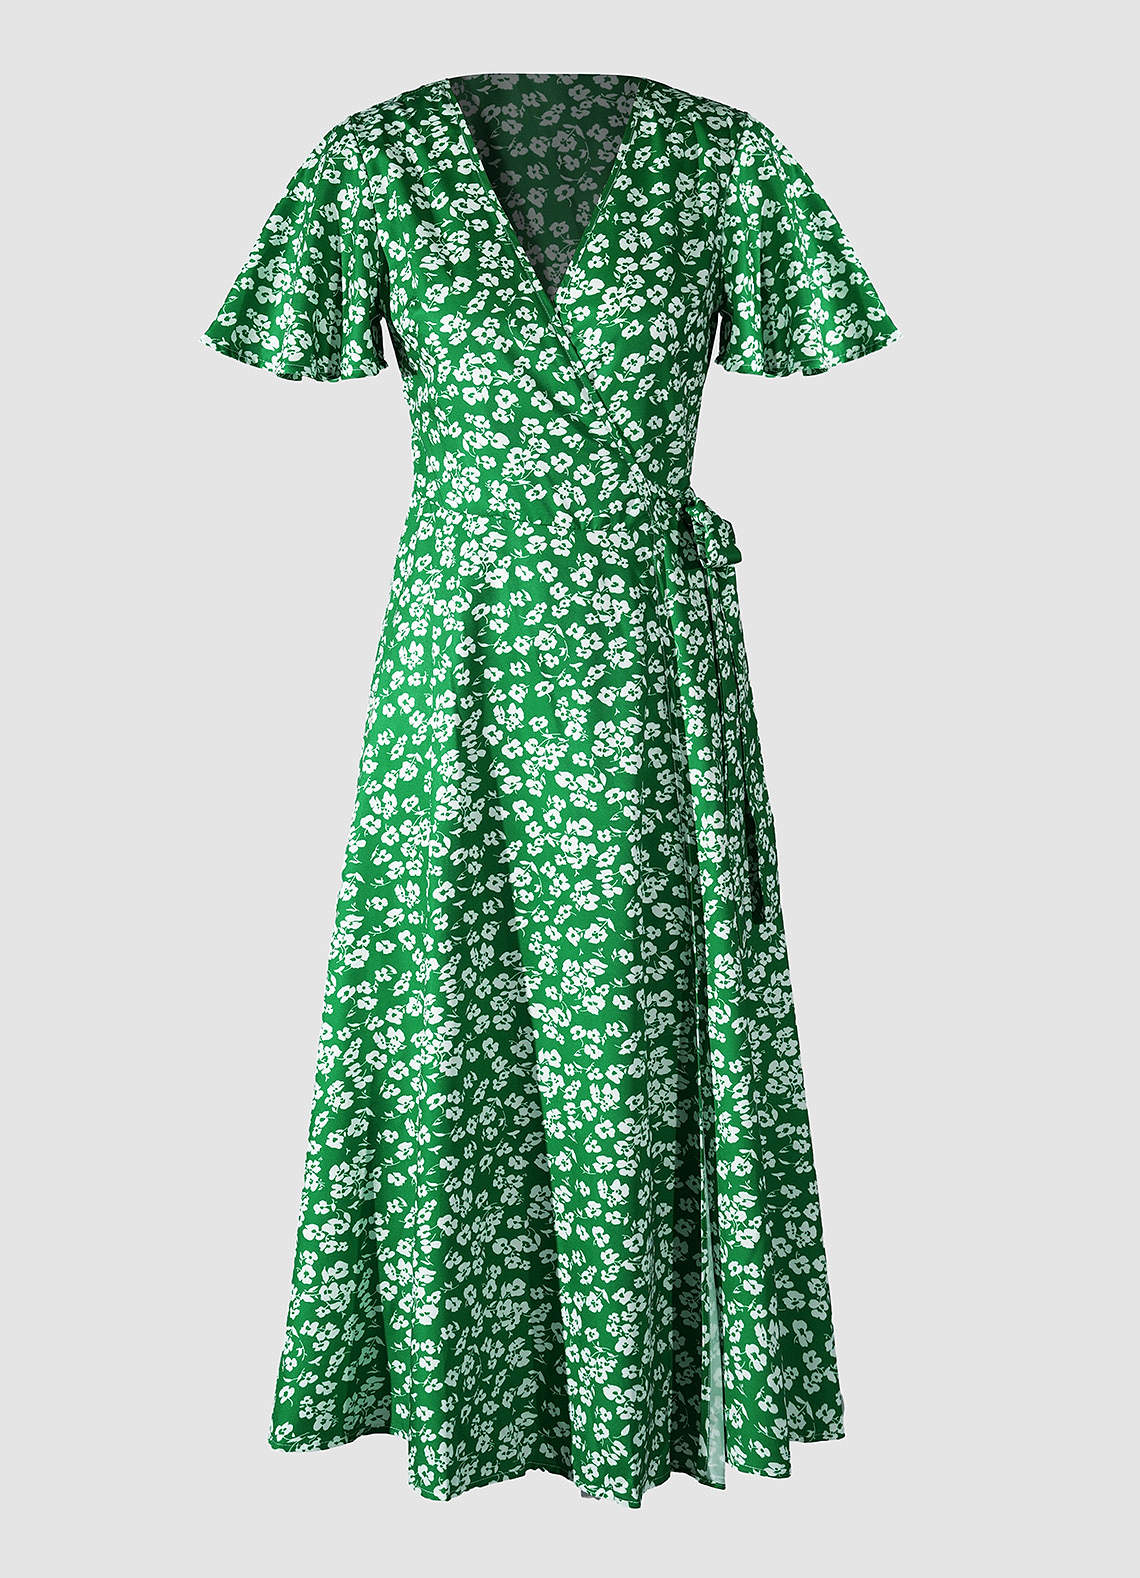 Robe Portefeuille Vert à Imprimé Floral image1